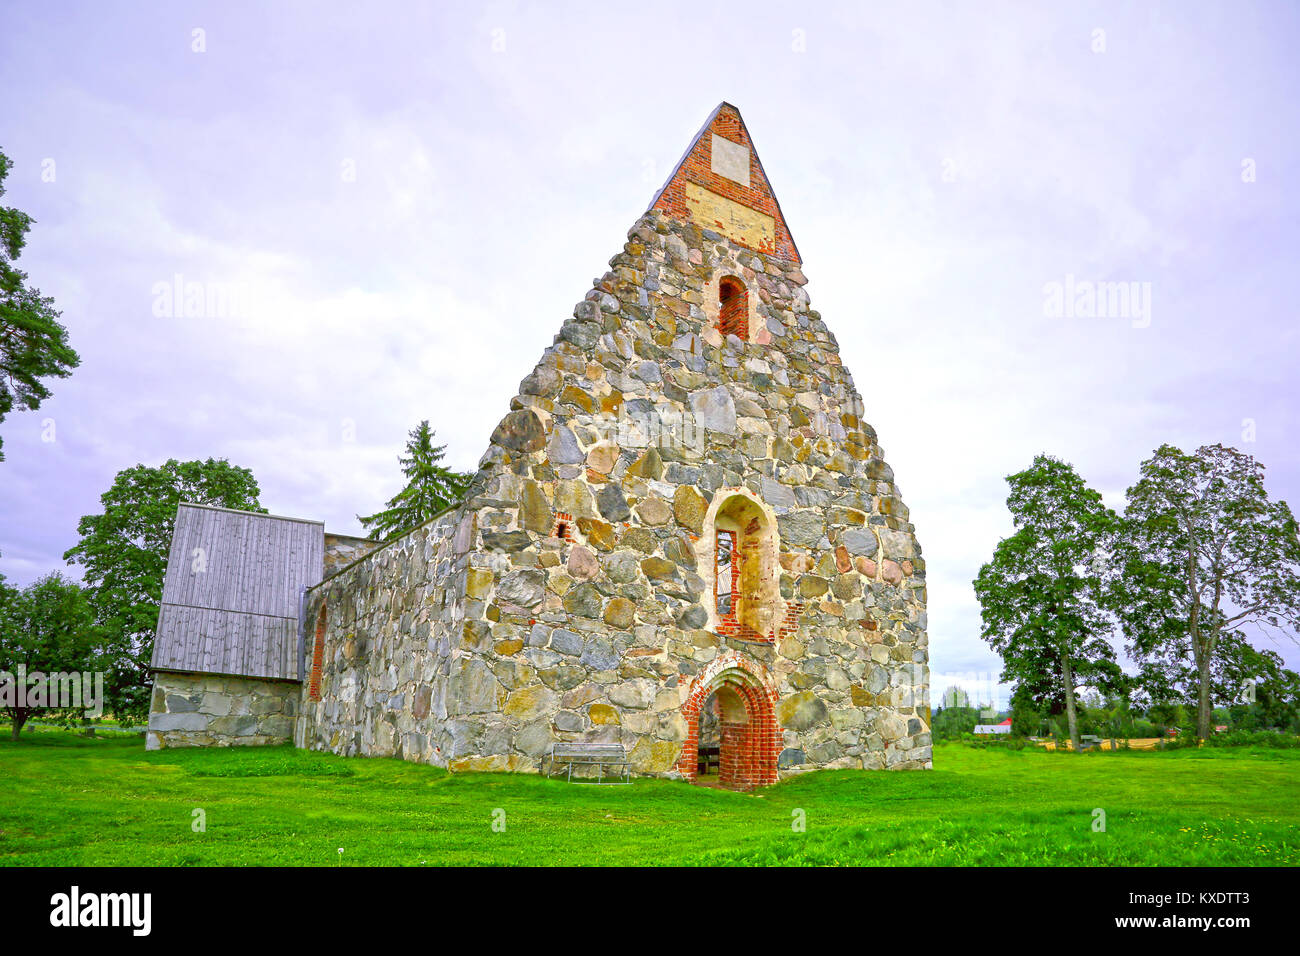 La rovina di Palkane vecchia chiesa di pietra in un giorno nuvoloso in estate, hdr enhanced. Foto Stock